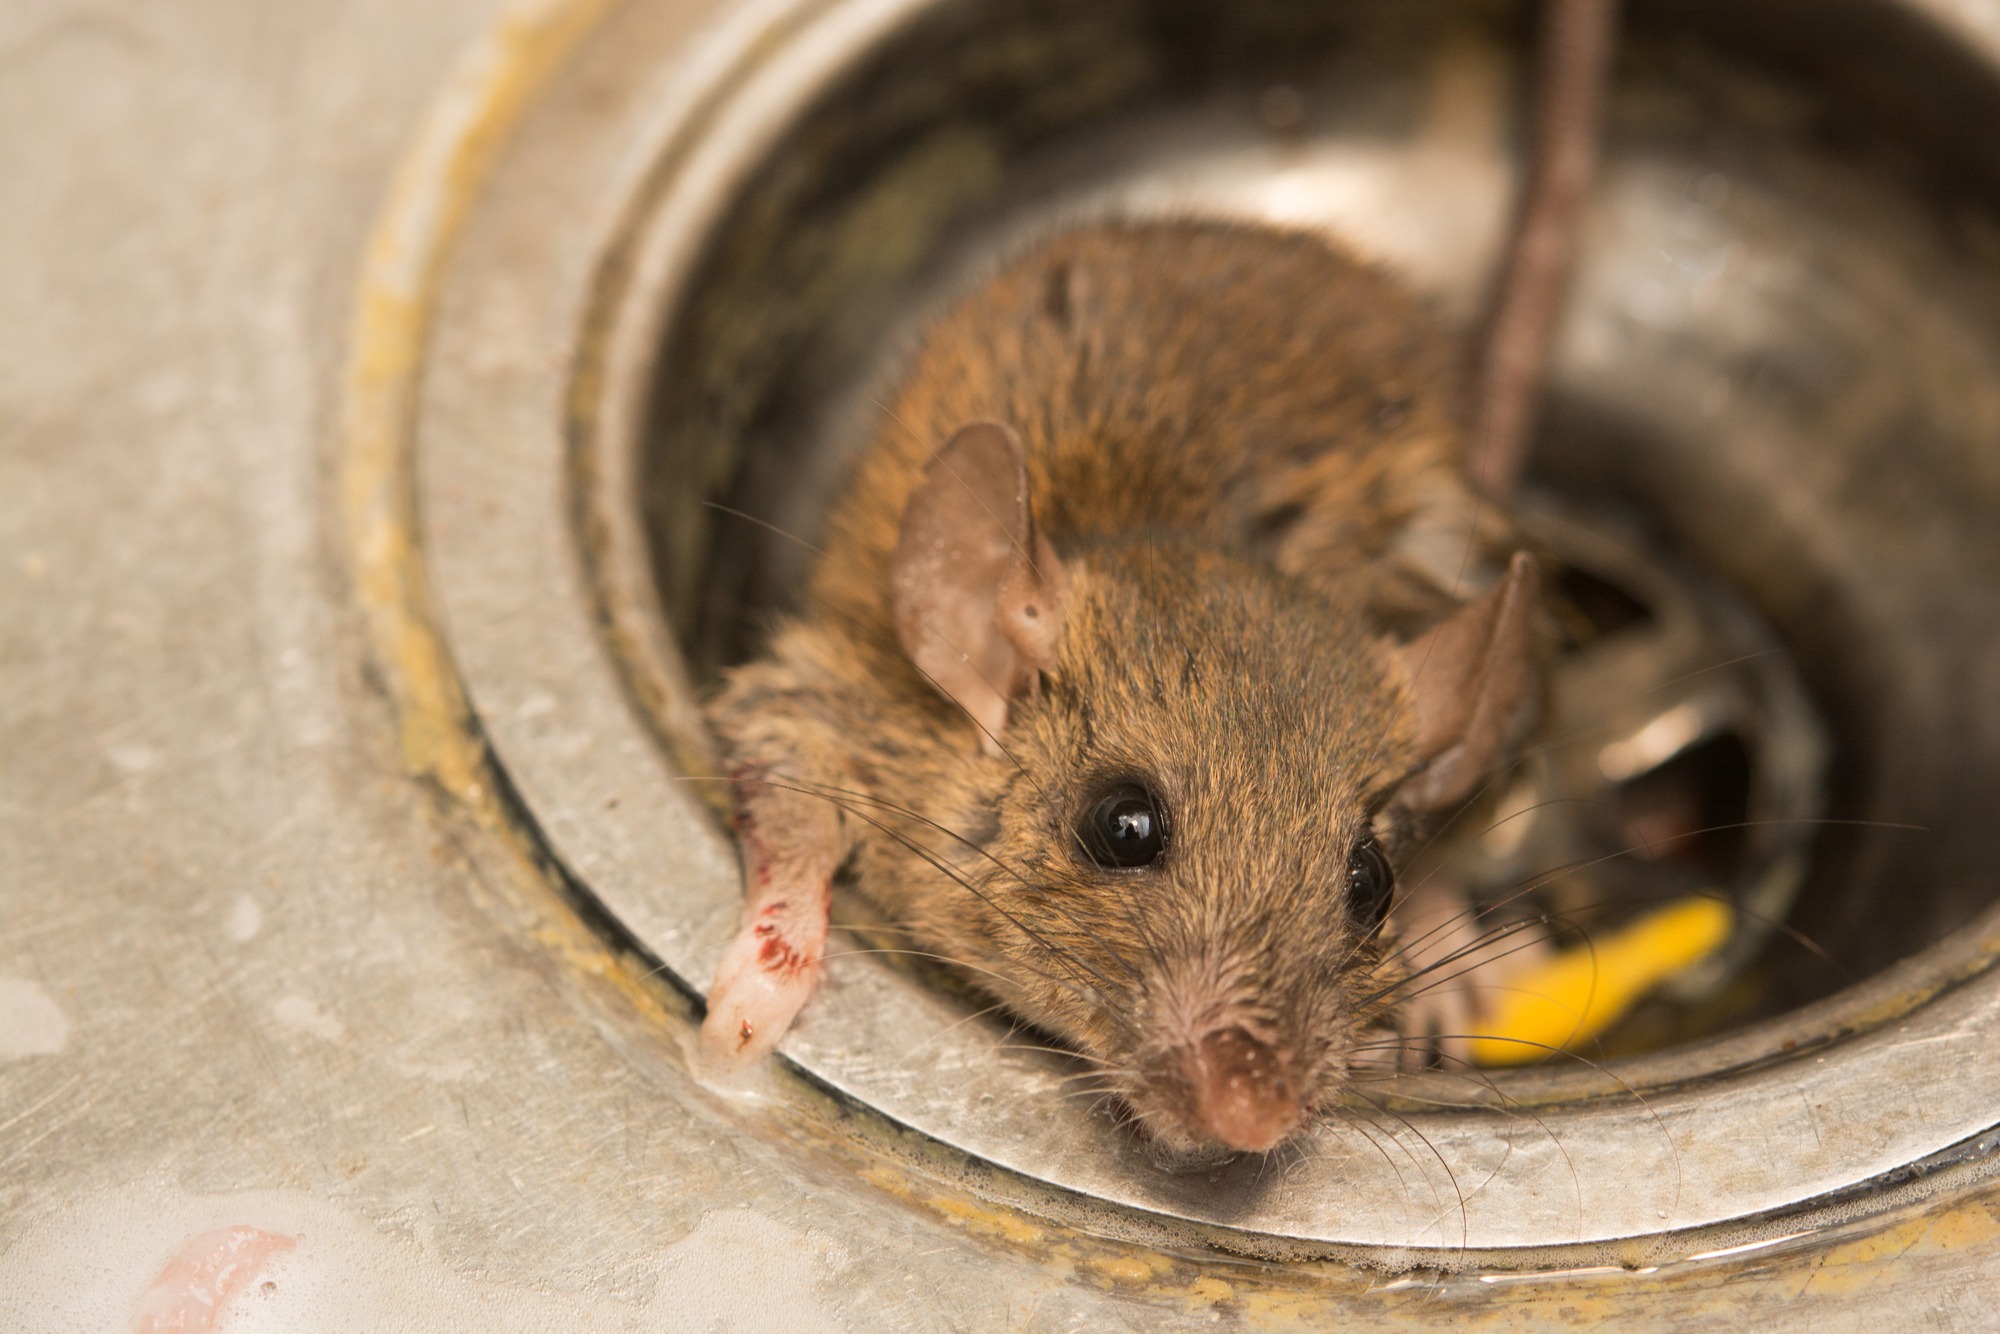 Rats kill remedies natural to 8 Homemade